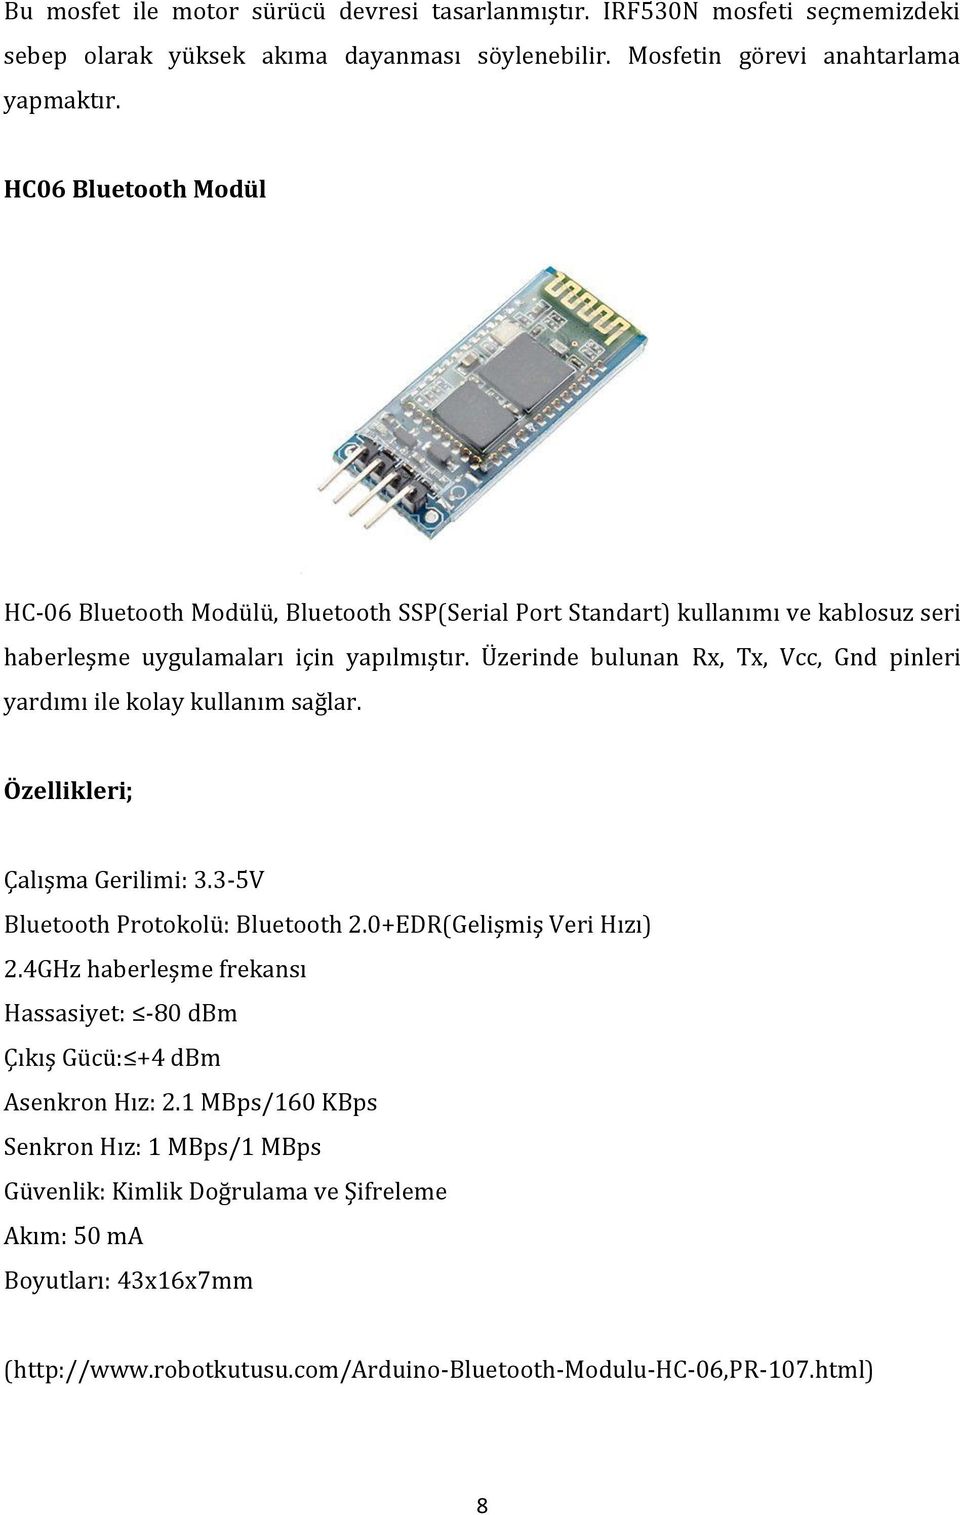 Üzerinde bulunan Rx, Tx, Vcc, Gnd pinleri yardımı ile kolay kullanım sağlar. Özellikleri; Çalışma Gerilimi: 3.3-5V Bluetooth Protokolü: Bluetooth 2.0+EDR(Gelişmiş Veri Hızı) 2.